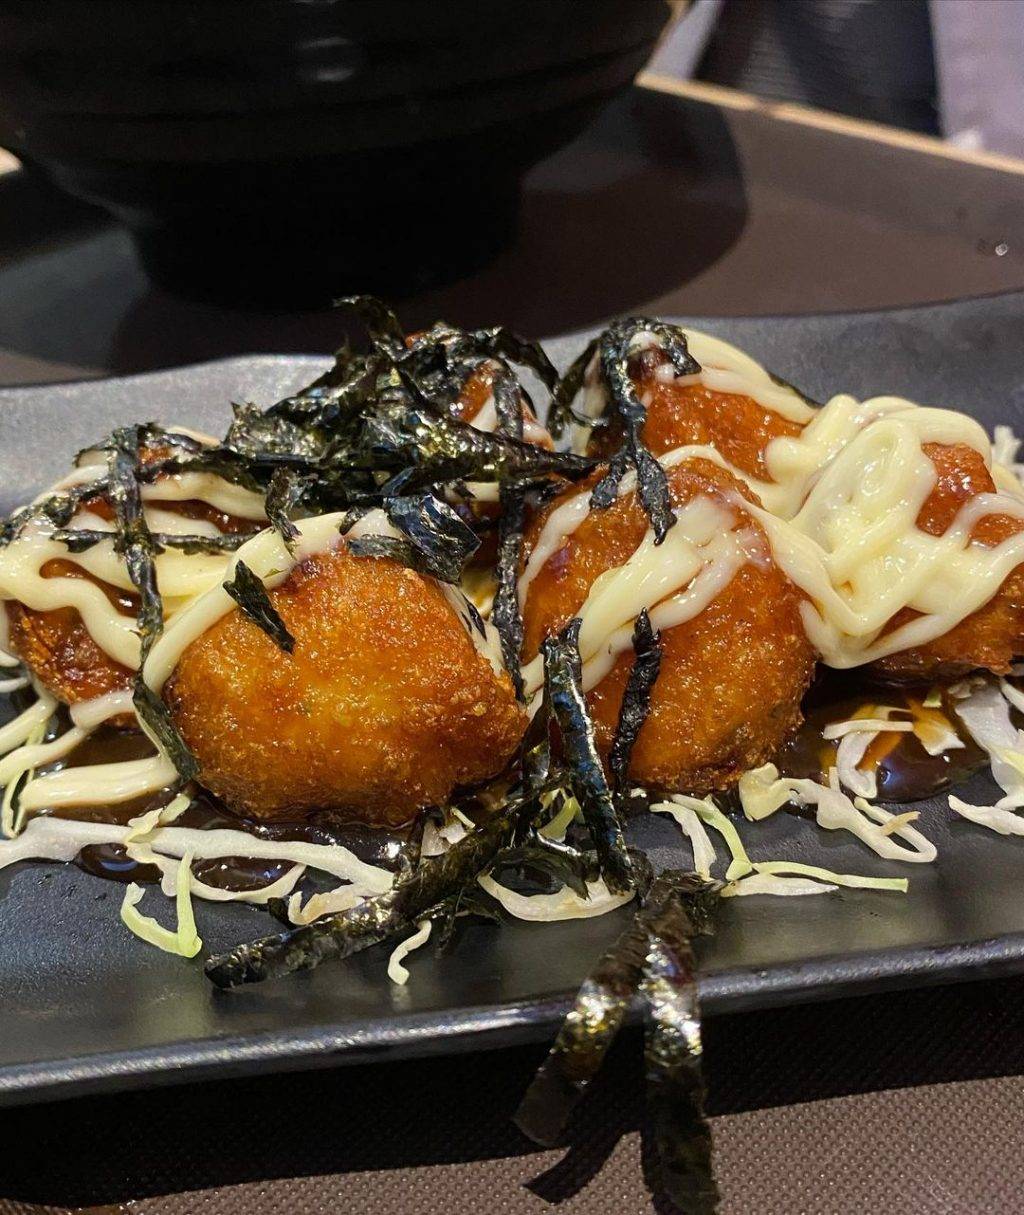 跨年夜後吃拉面🍜“Takagi Ramen”深夜食堂！ 24小時無間斷營業，辣椒螃蟹+鹹蛋黃風味拉面